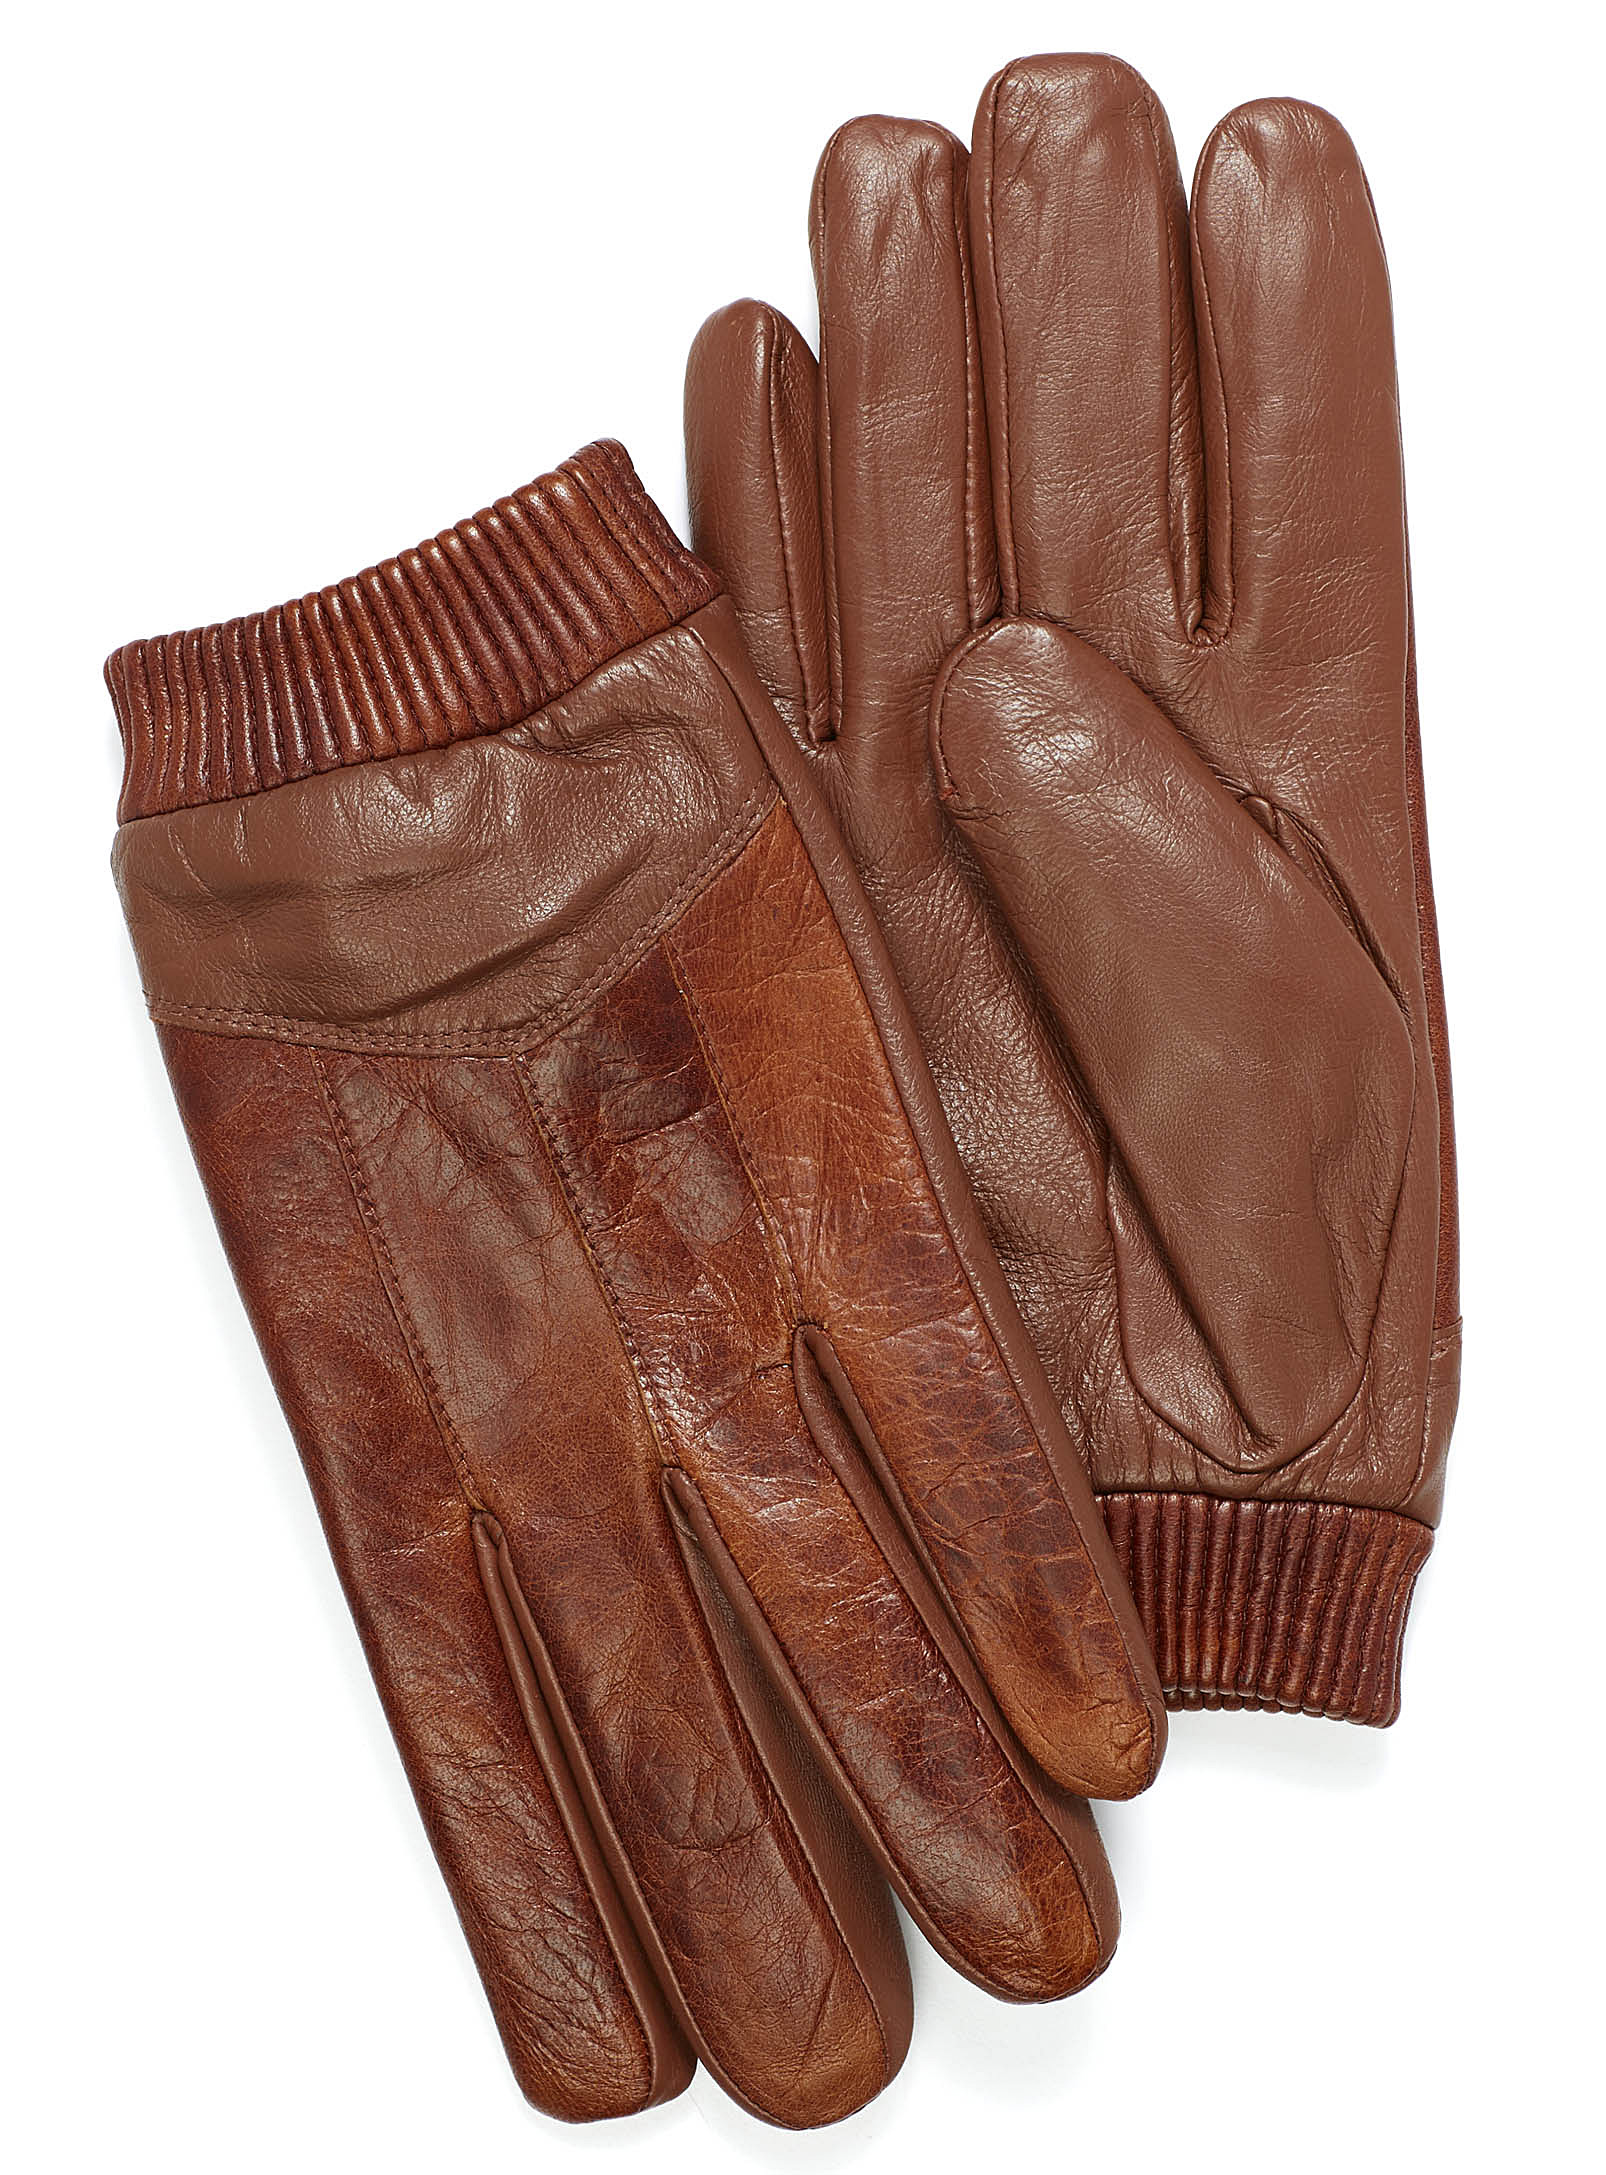 Auclair - Men's Vintage leather gloves